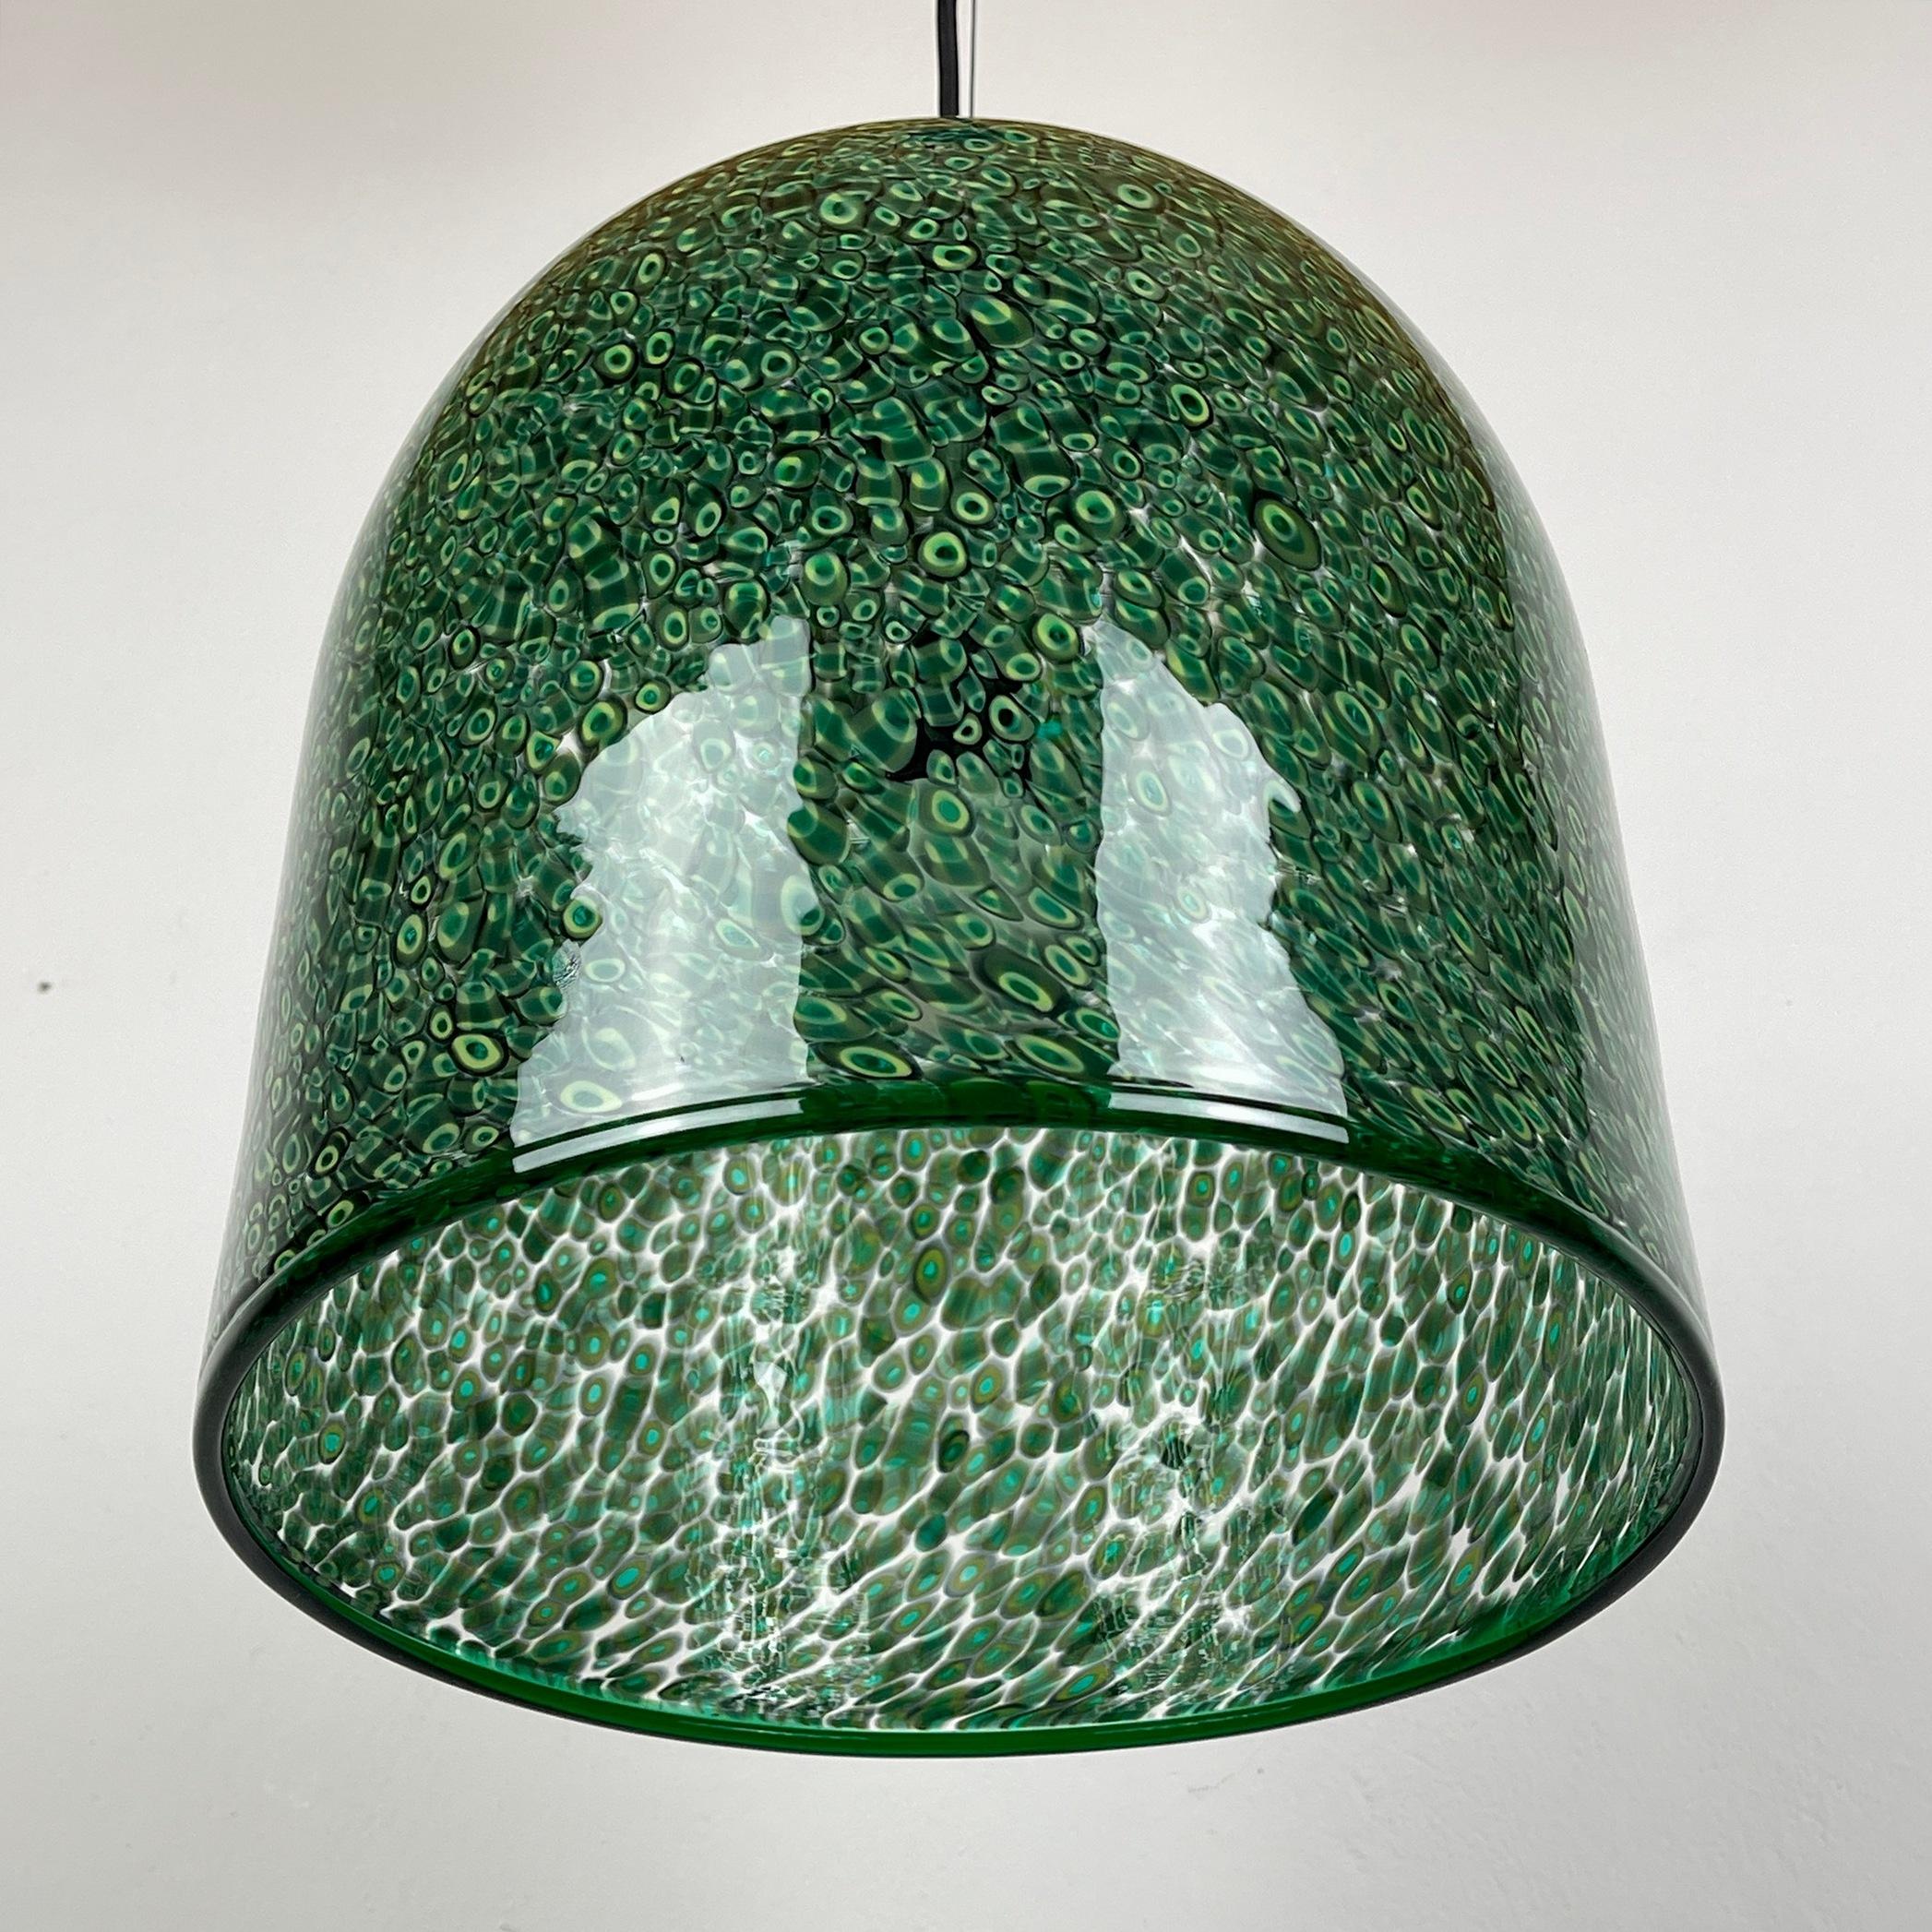 Italian  Green murano pendant lamp Neverrino by Gae Aulenti for Vistosi Italy 1976s